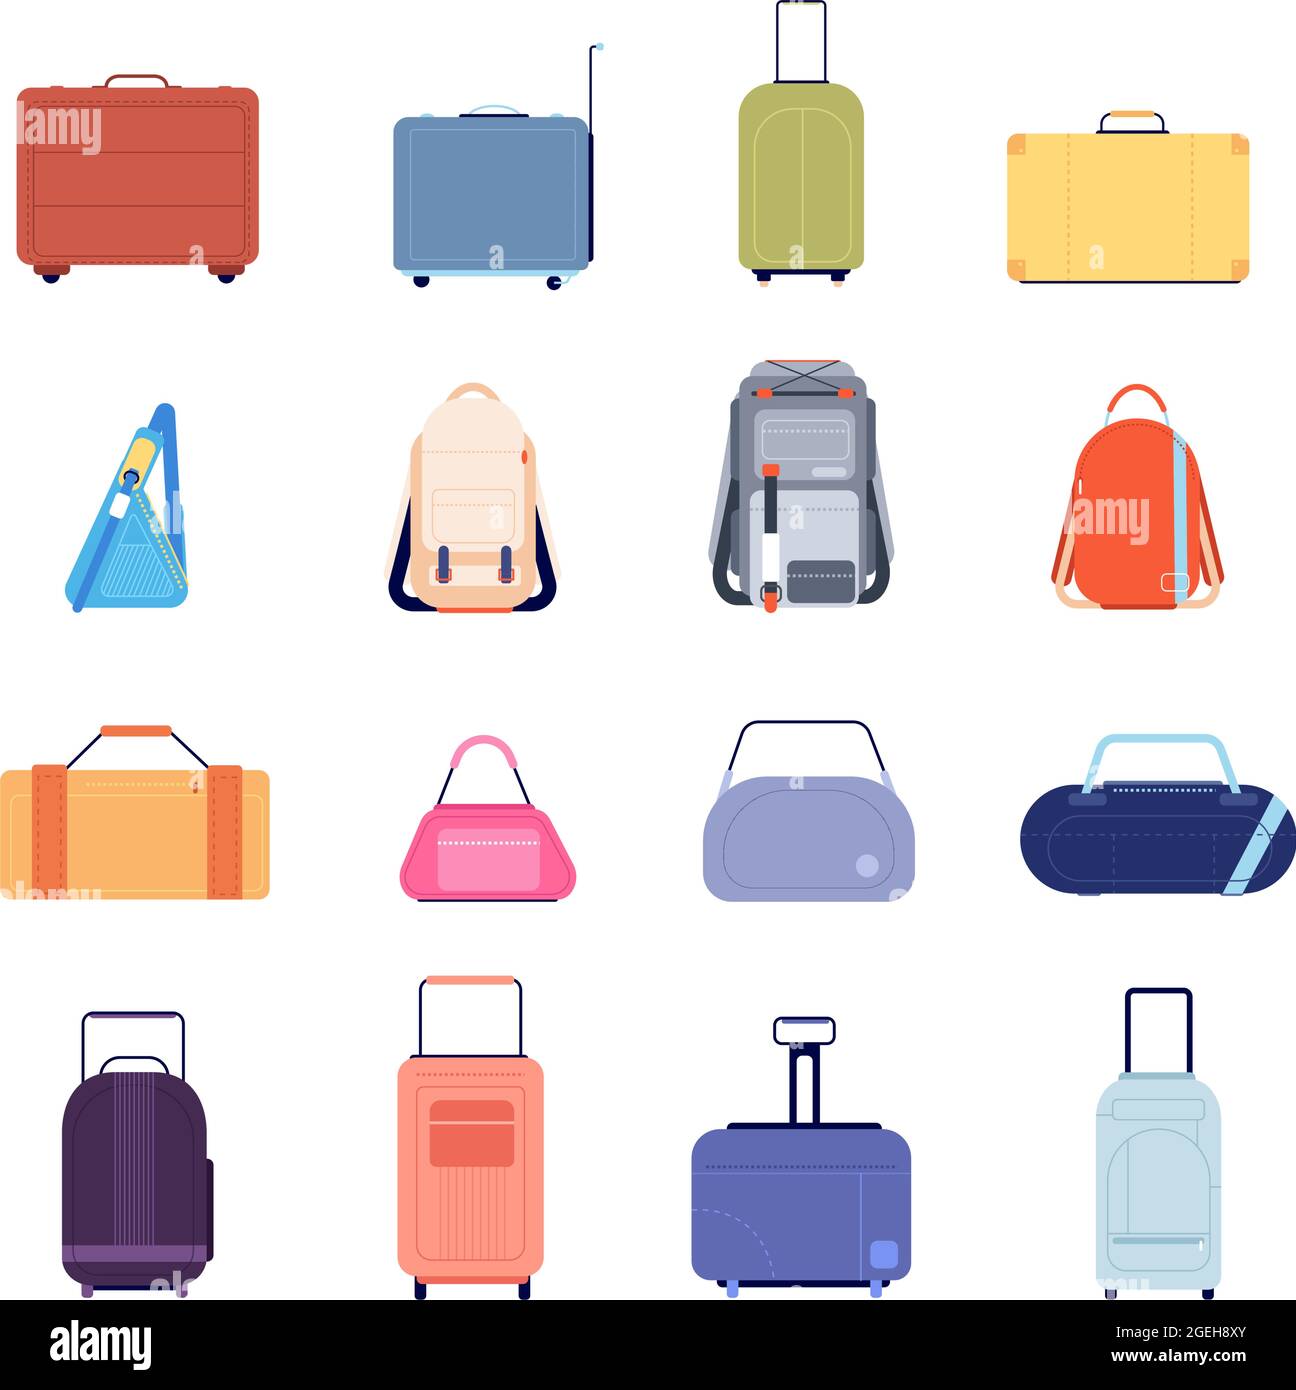 Designer Handbag Vector Images (over 27,000)